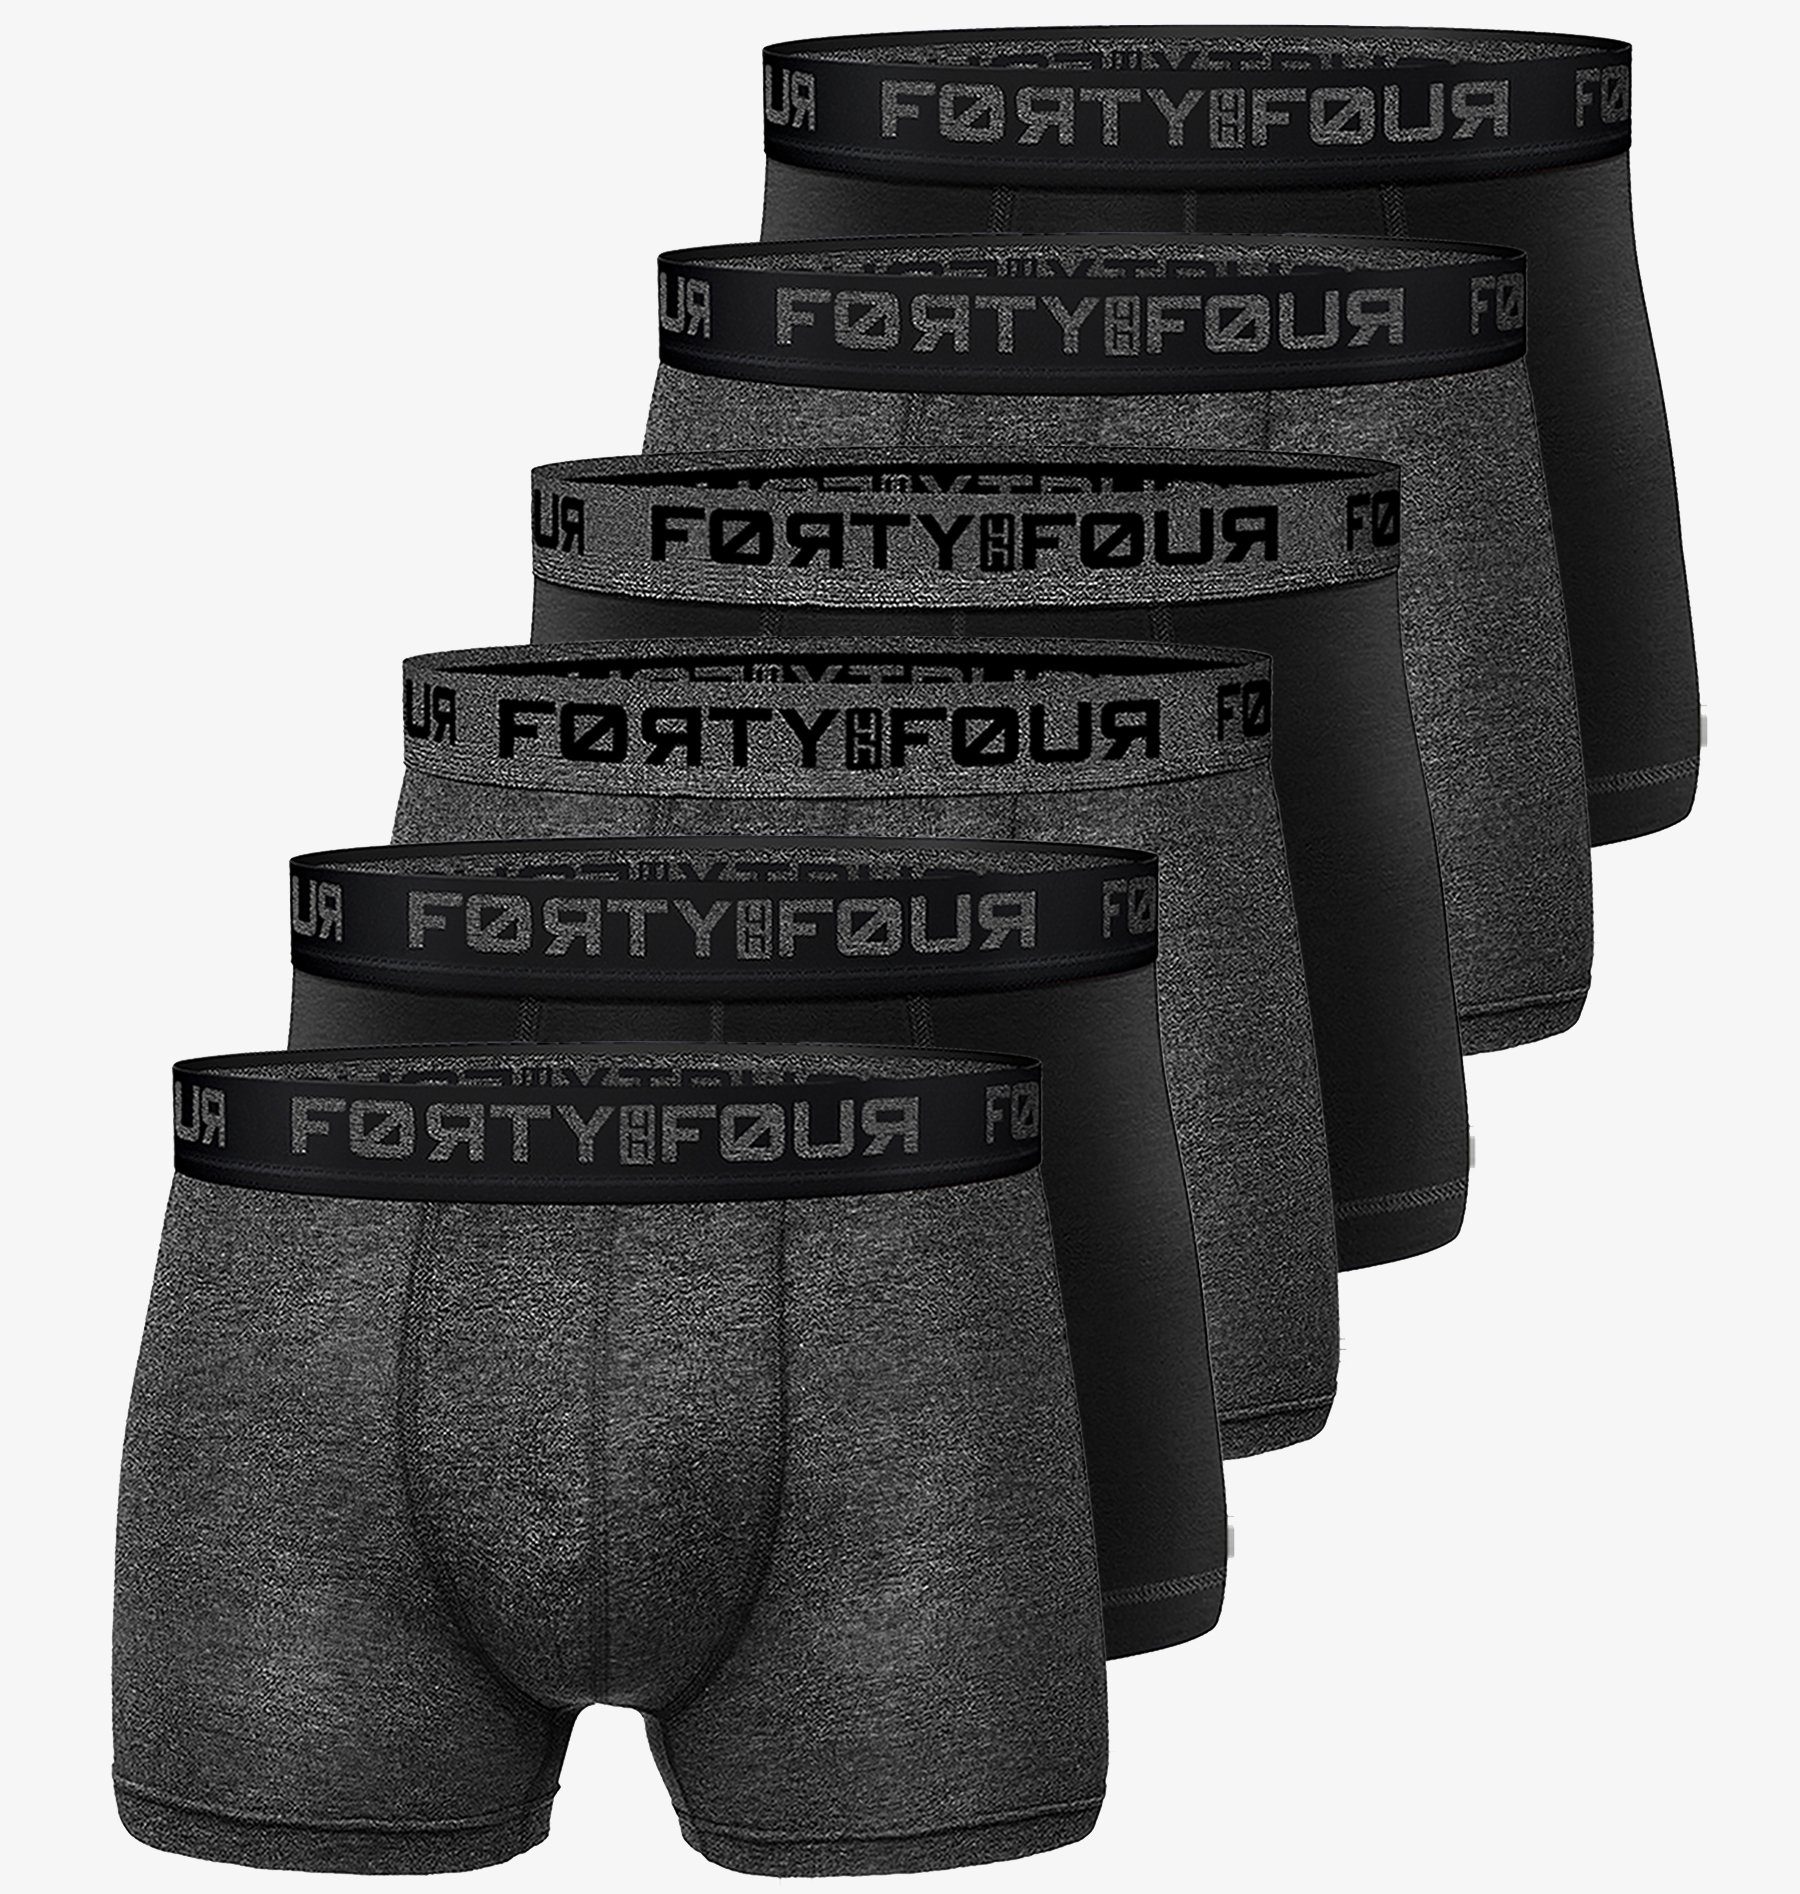 Unterhosen FortyFour Passform S Herren 6er (Vorteilspack, Qualität Baumwolle perfekte Boxershorts Pack) 706e-schwarz/anthrazit Männer - Premium 7XL